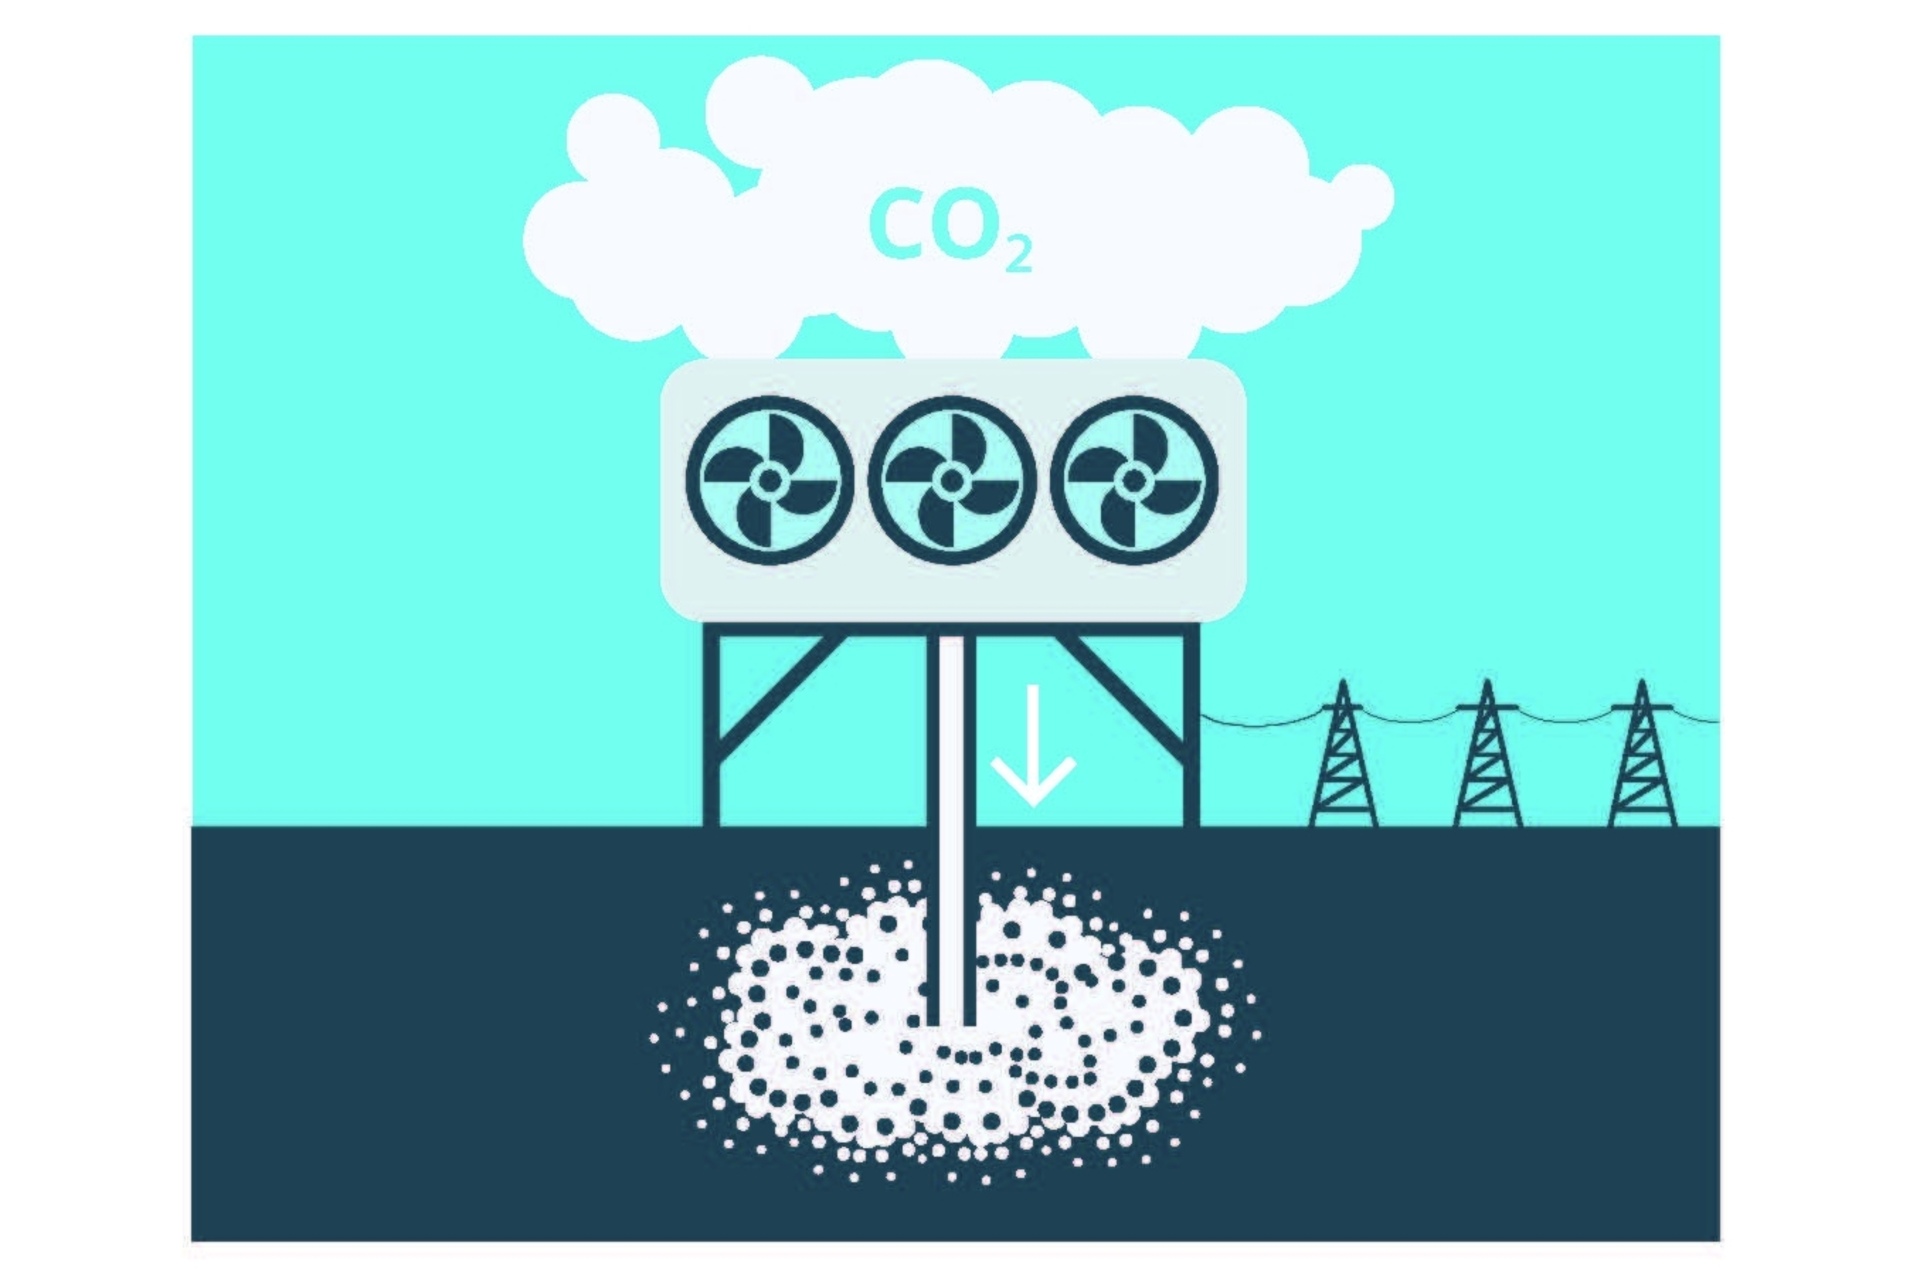 CO2: מטעם TA-SWISS, ה-Öko-Institut ו-EMPA העריכו חמישה NET רלוונטיים פדרלית